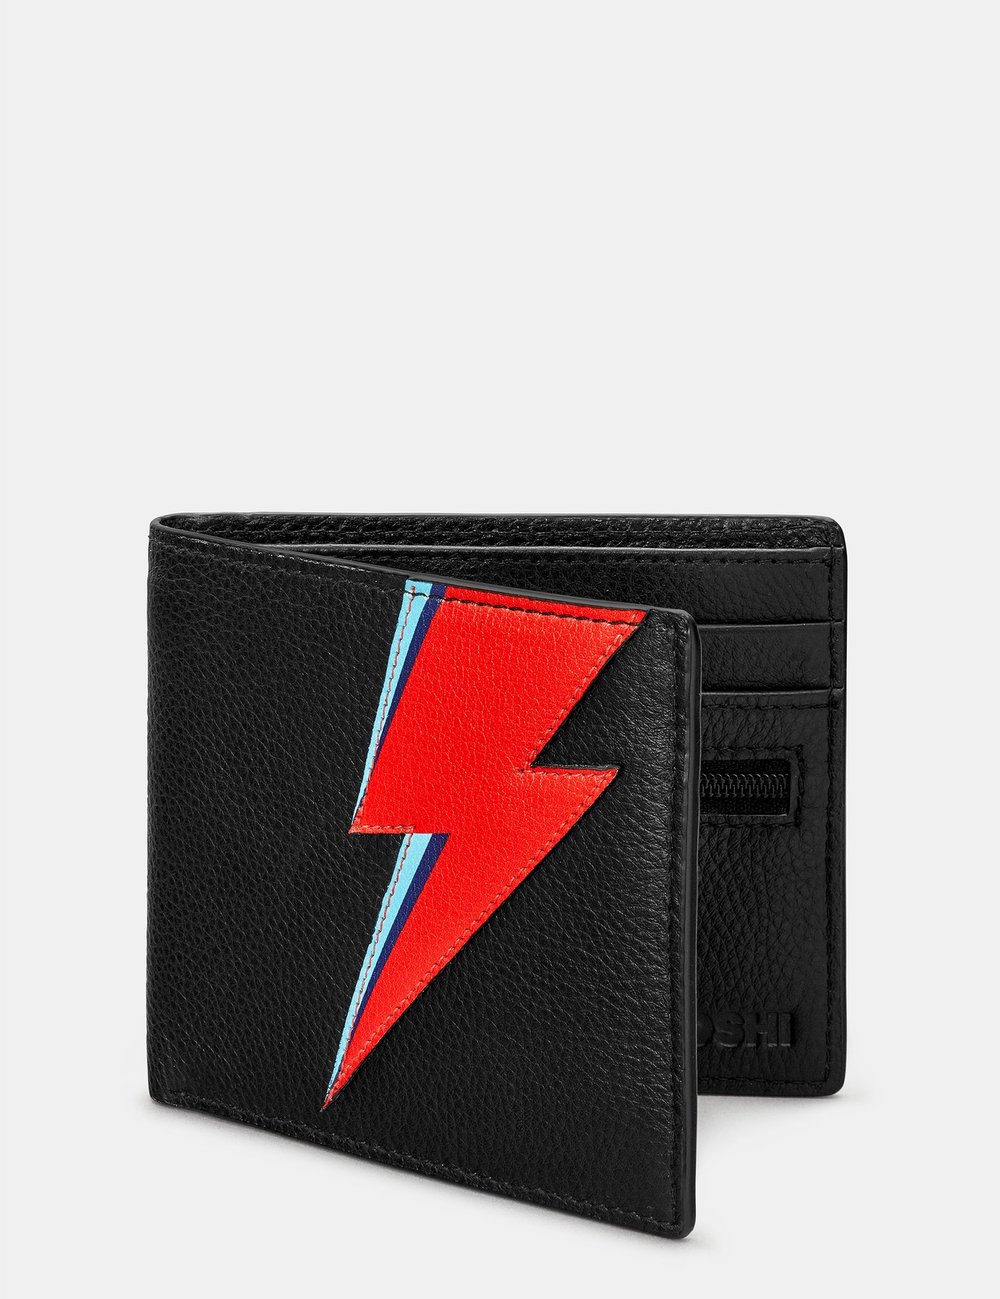 Lightning Bolt black leather Wallet